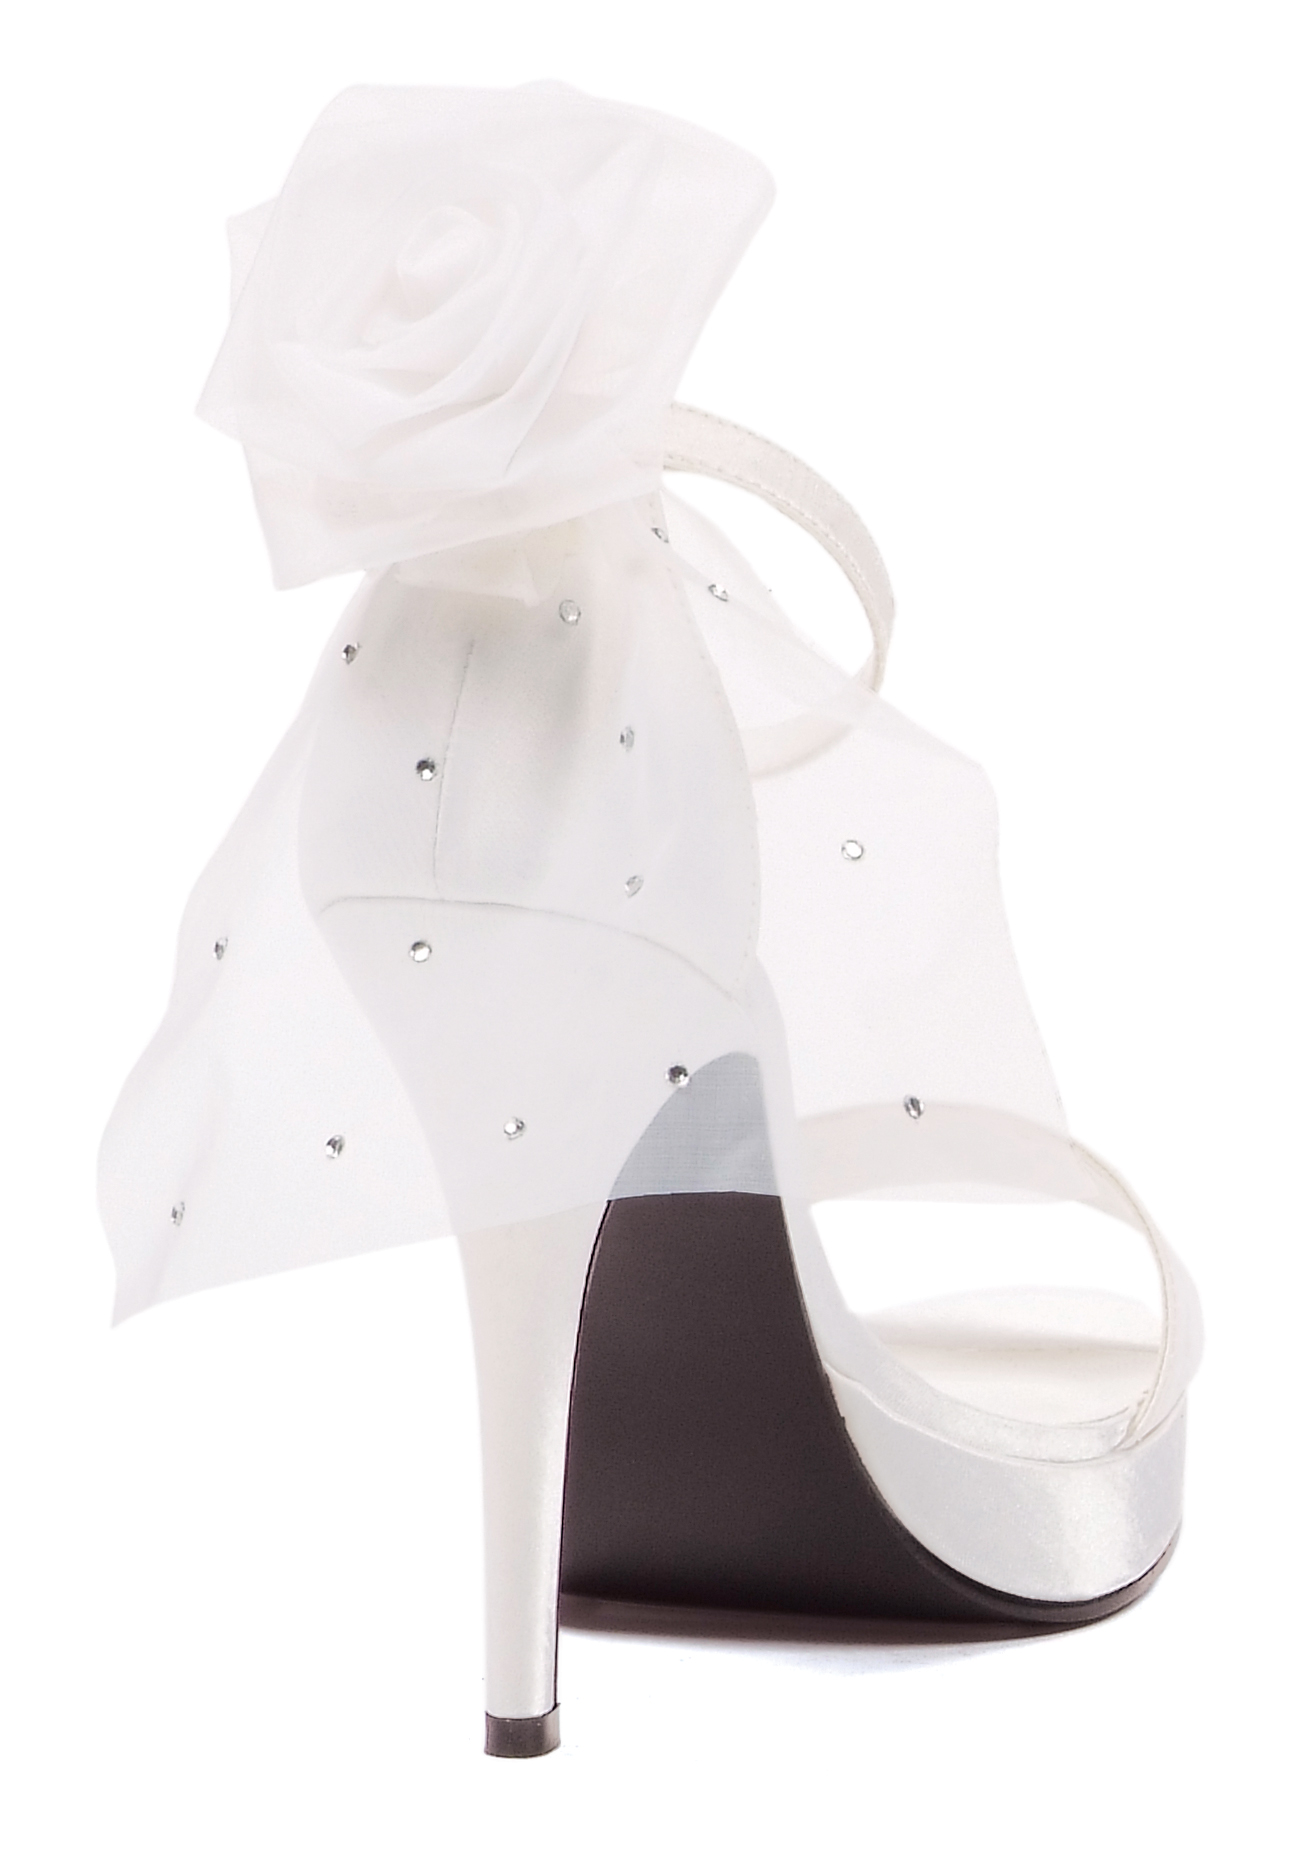 Bride - 4.5 Inch Bridal Sandal with Back Veil